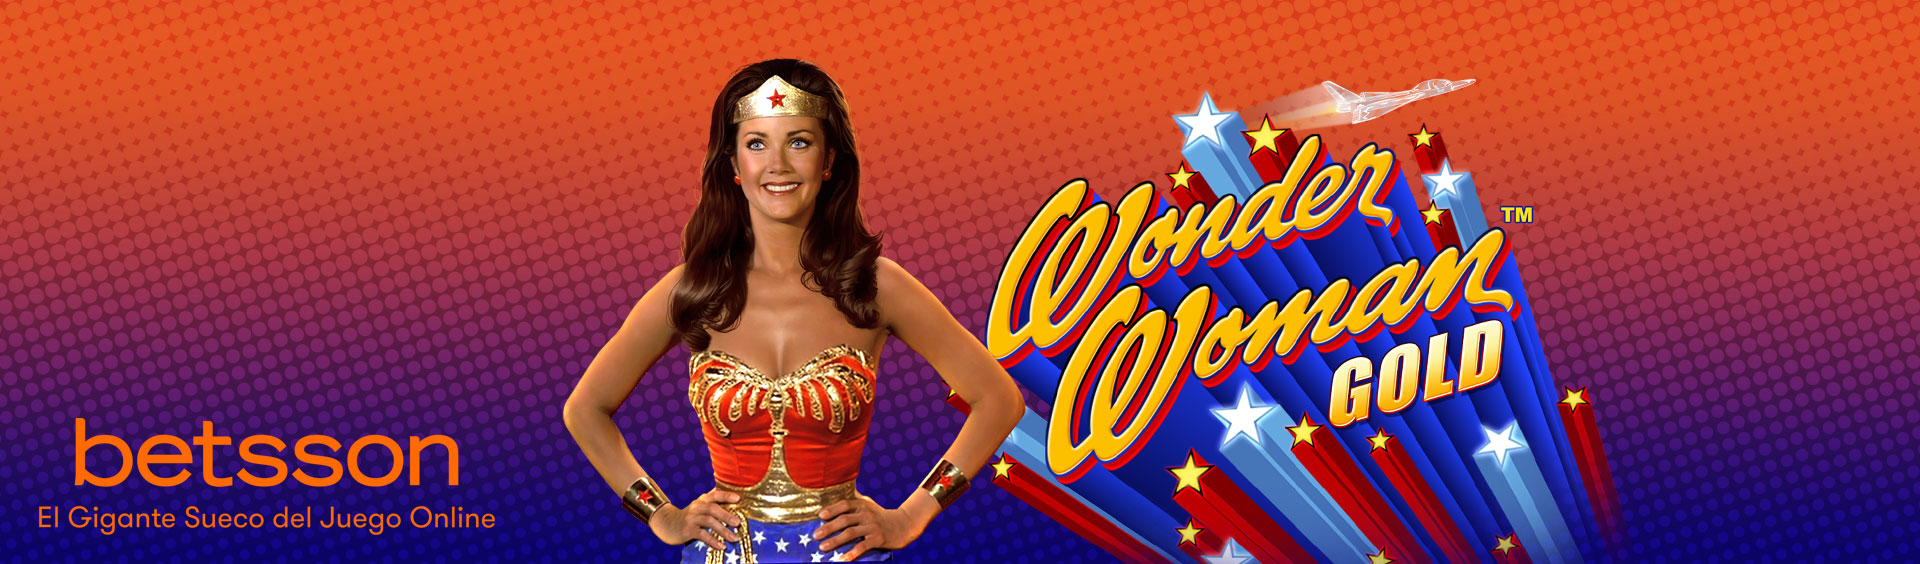 Conoce a Wonder Woman Gold, la mujer más poderosa del mundo